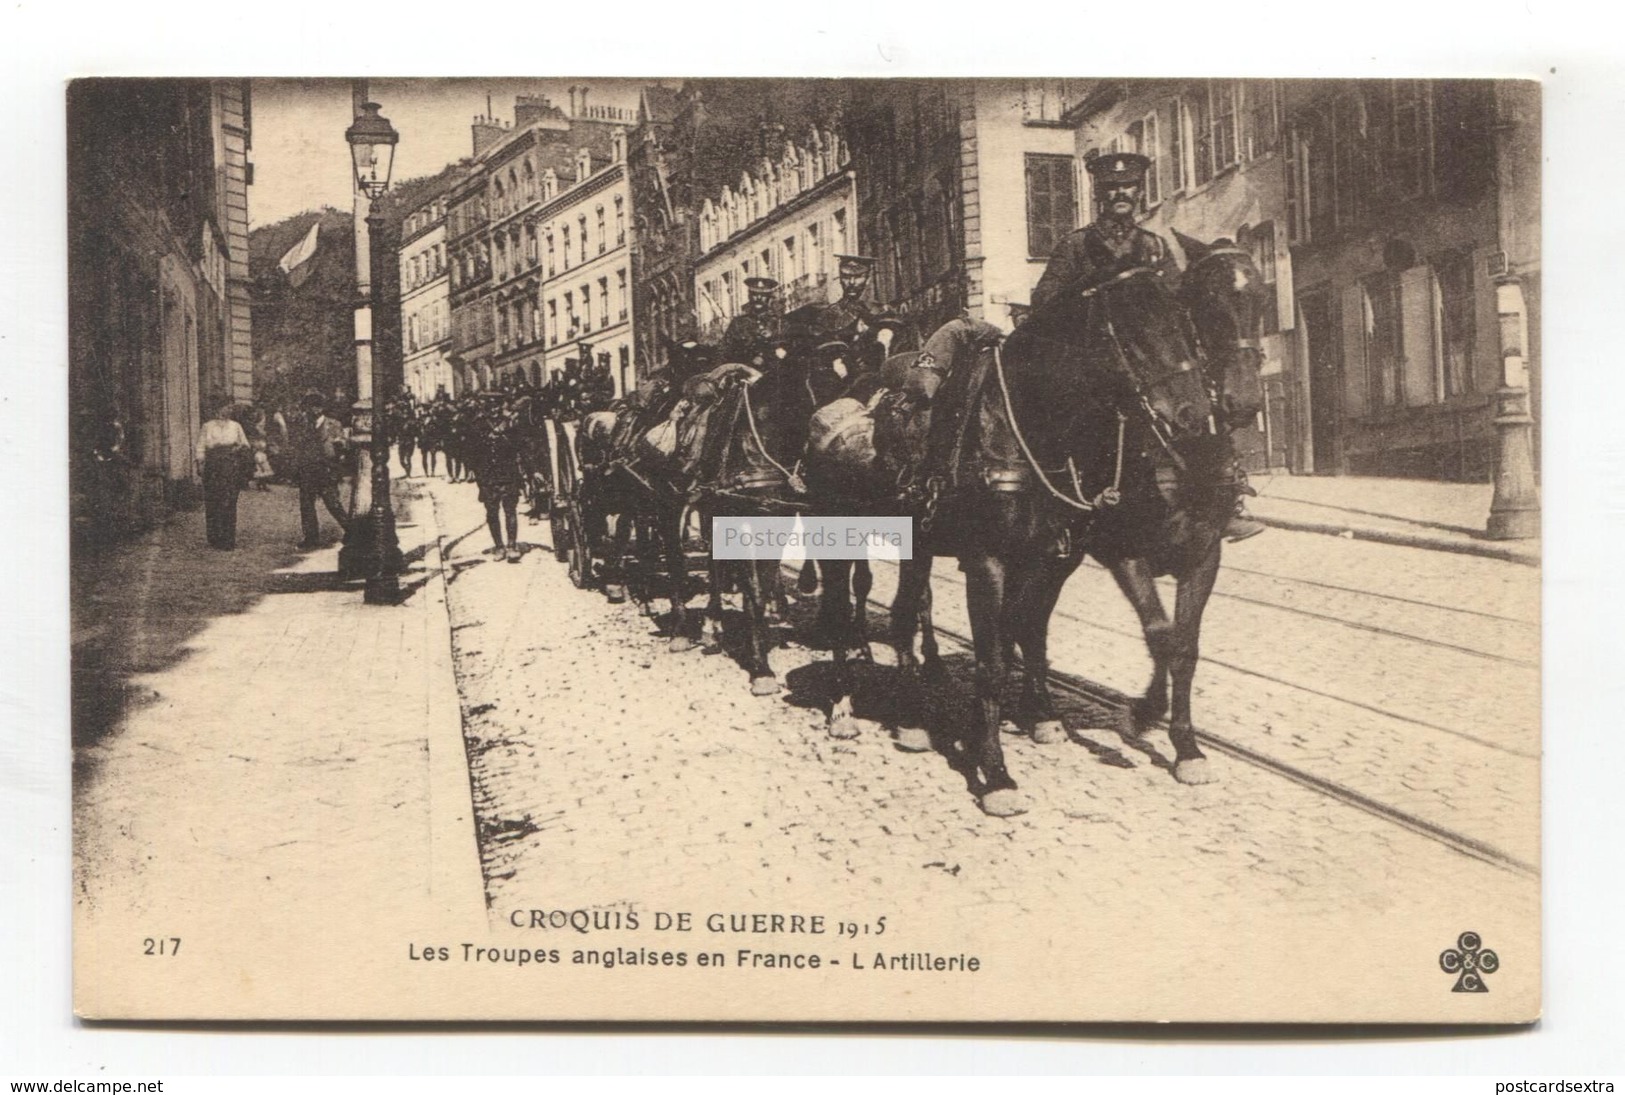 Croquis De Guerre - Les Troupes Anglaises En France - L'Artillerie - Street Scene In France, British Troops - War 1914-18